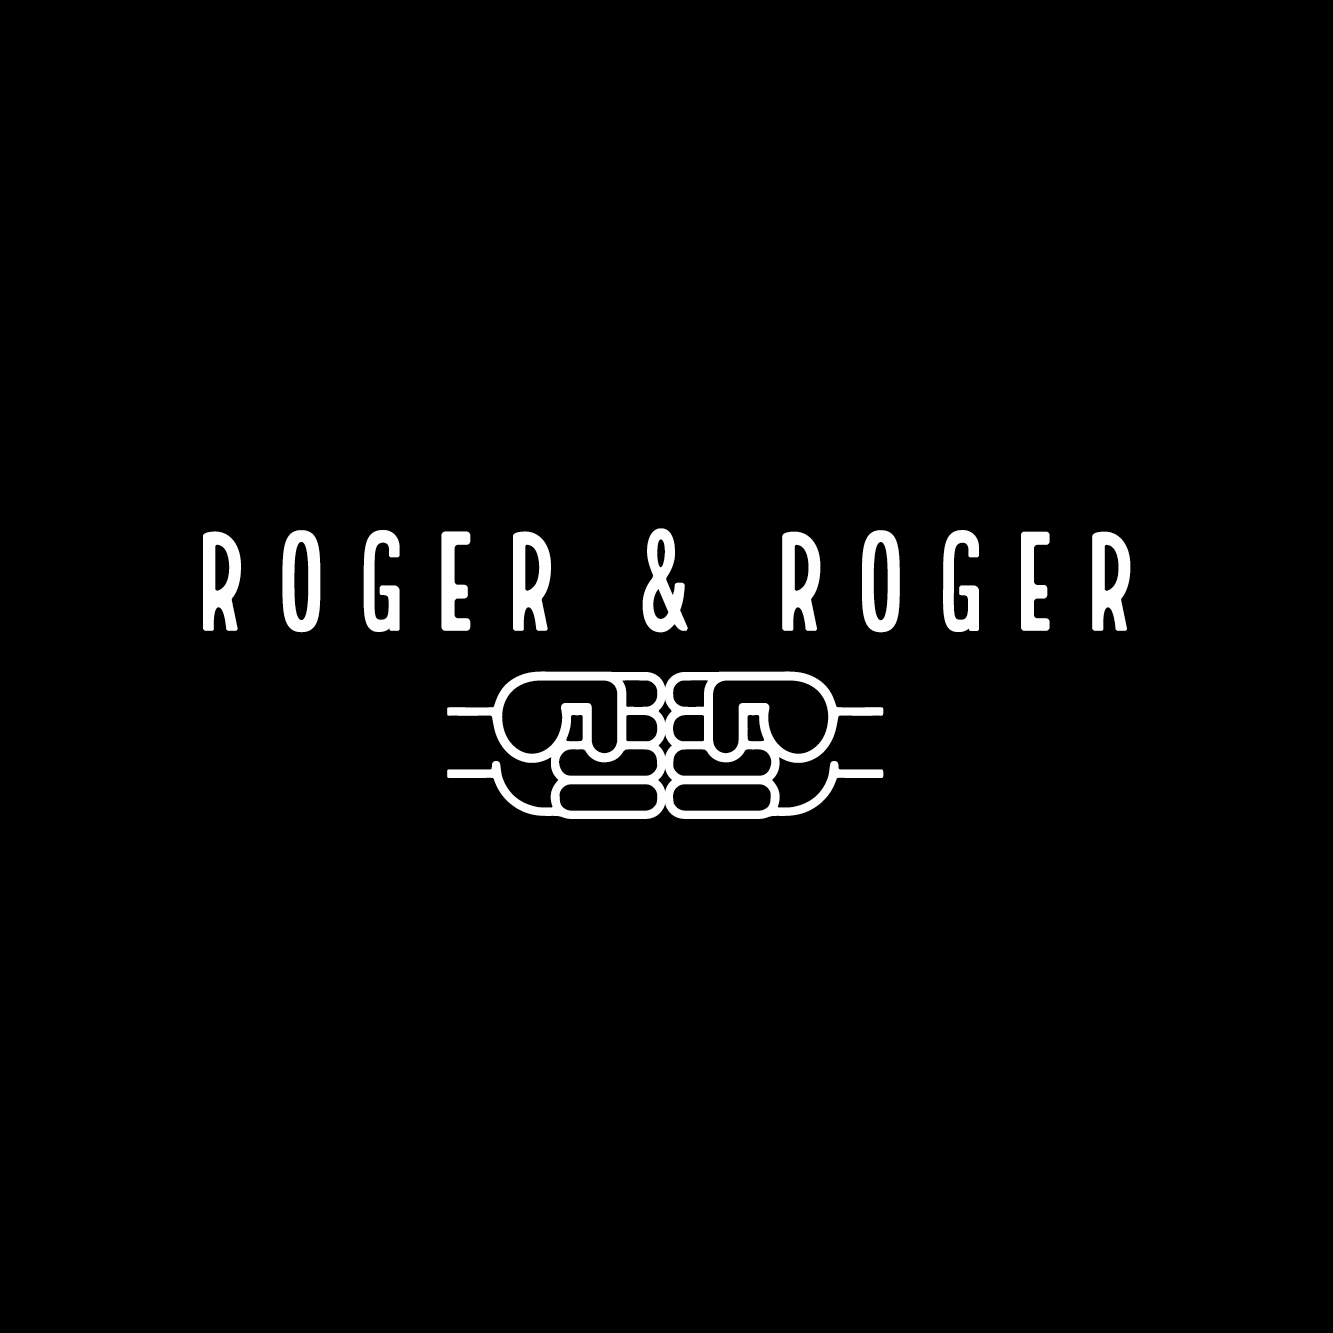 ROGER & ROGER